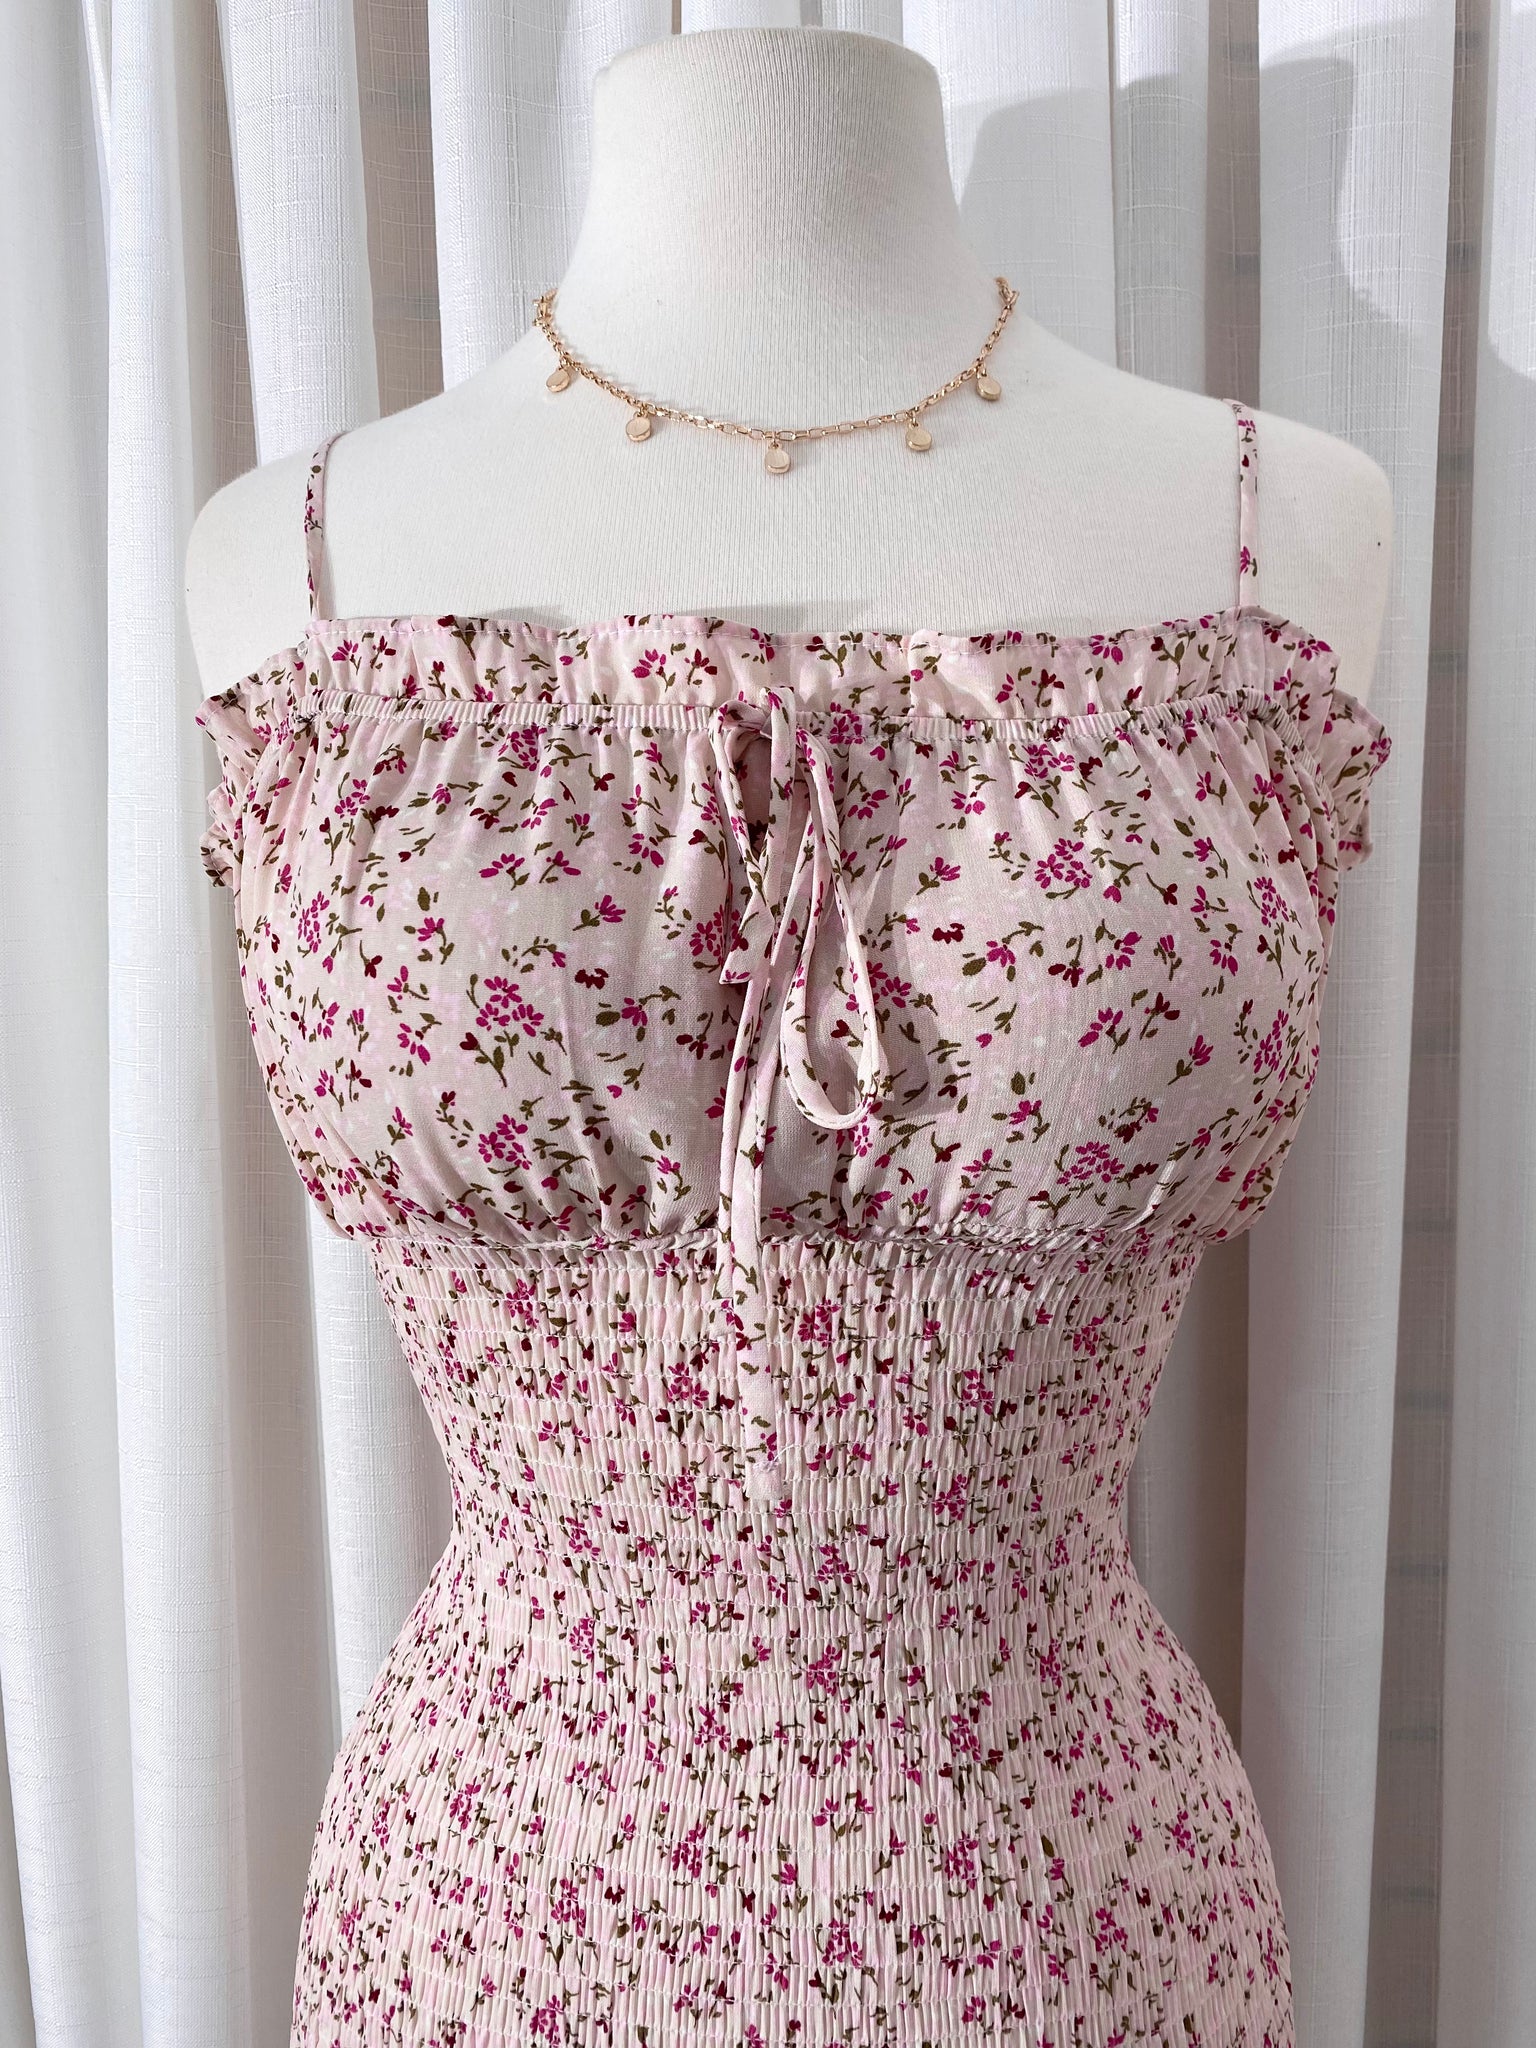 The “Violet” Smocked Dress